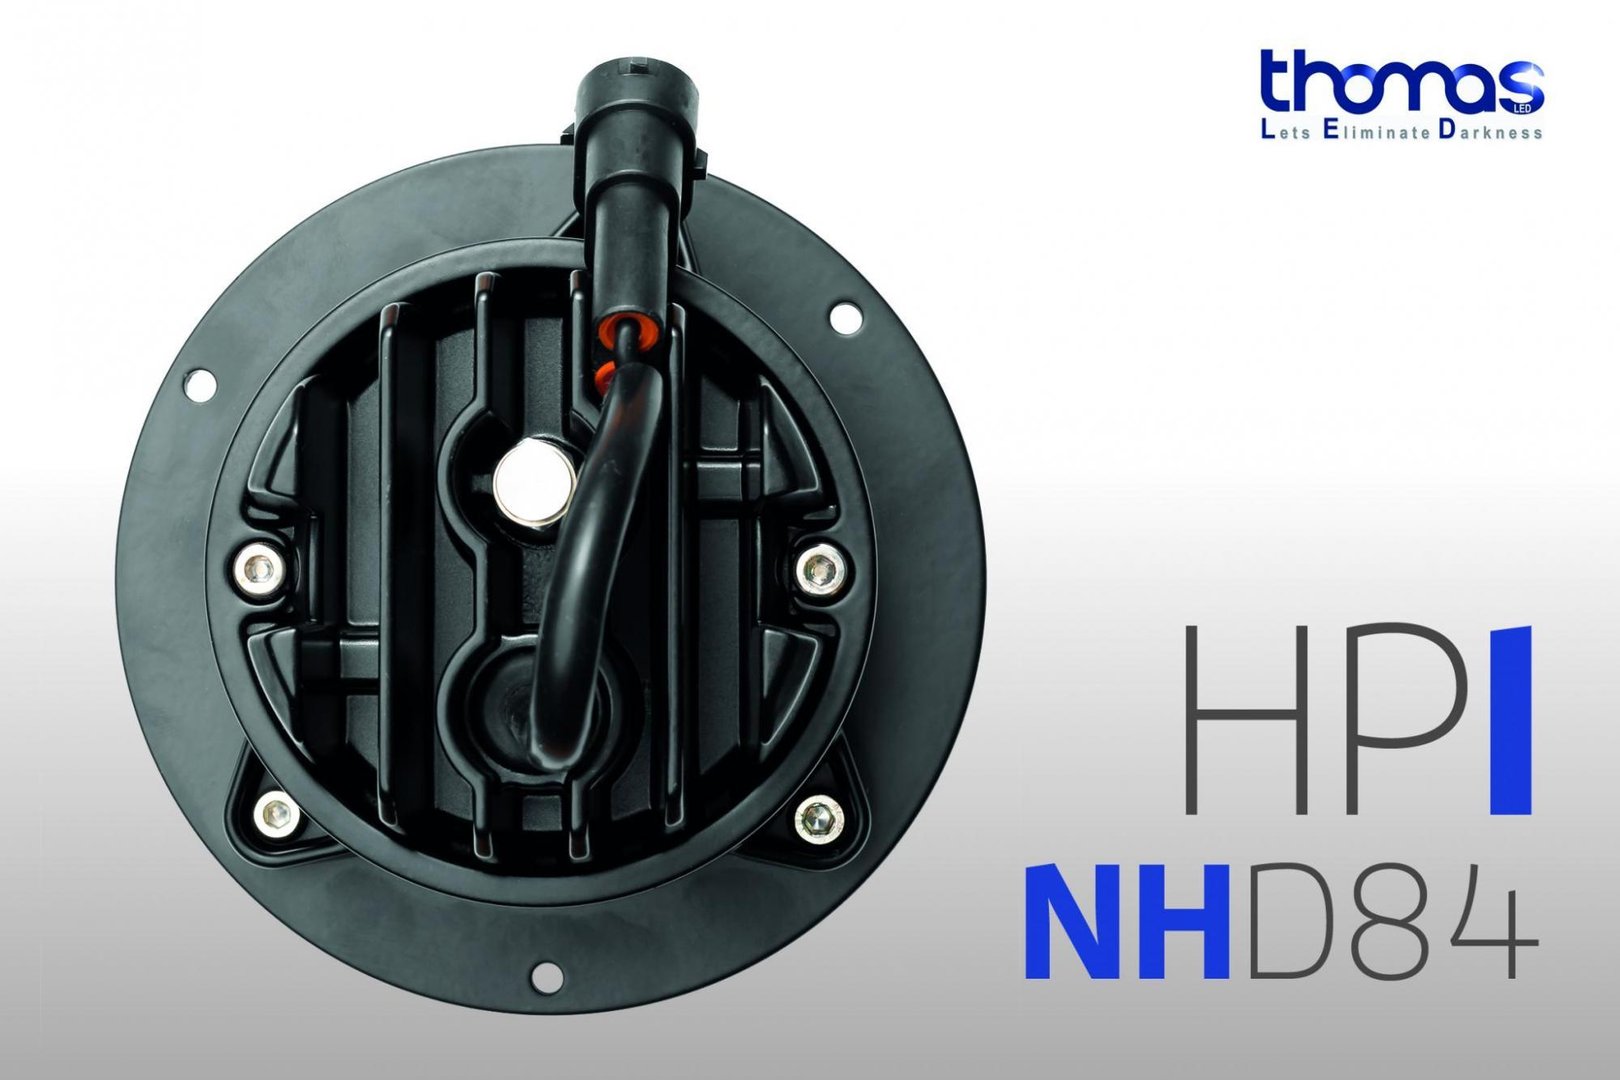 LED Einbauscheinwerfer für New Holland Traktoren - Thomas GmbH